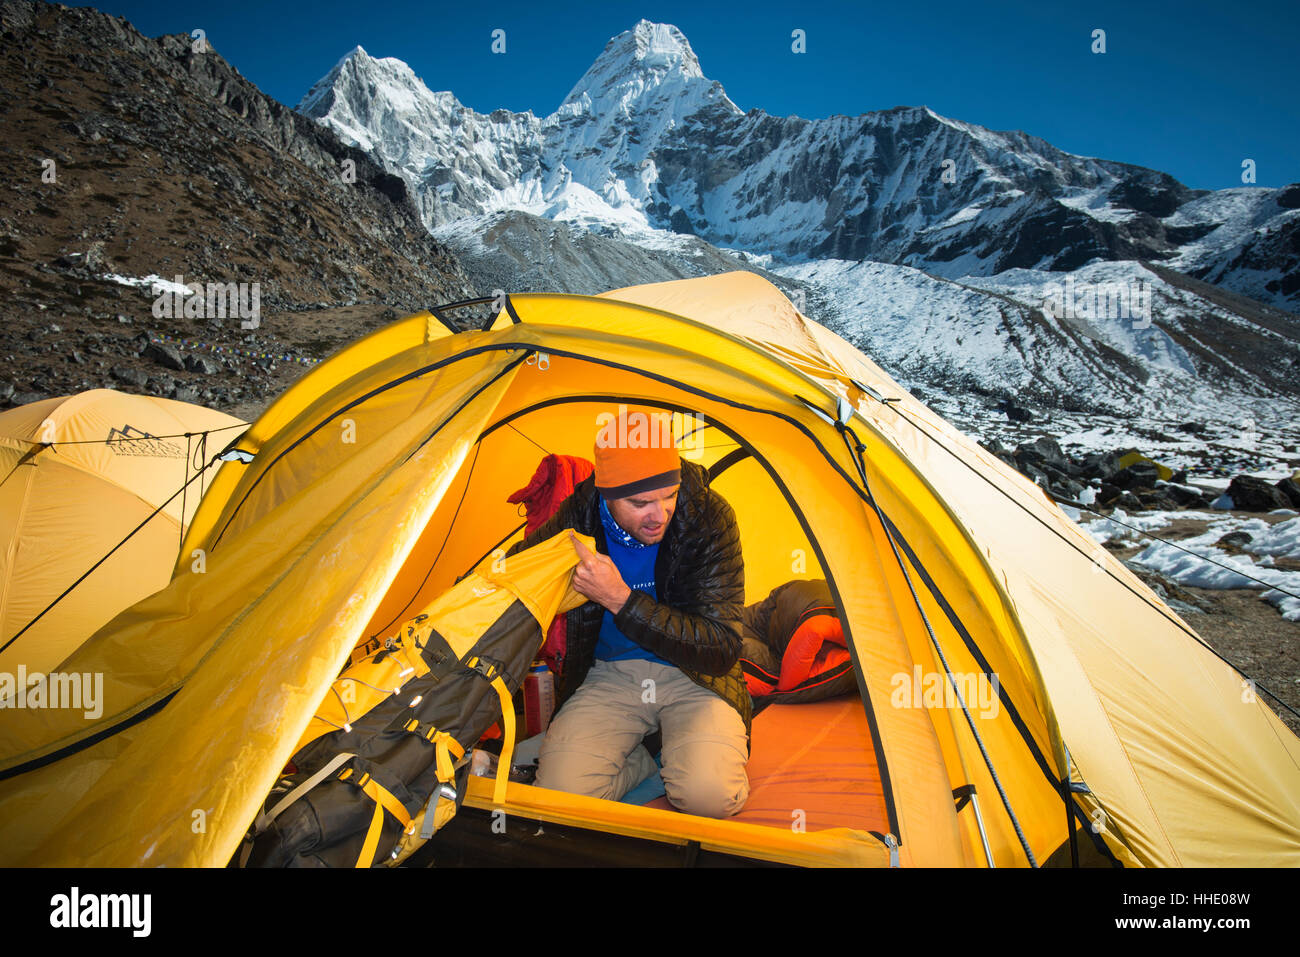 Ein Bergsteiger packt seine Tasche in Vorbereitung, Ama Dablam, 6856 m Gipfel in der Ferne, Khumbu-Region Nepal zu klettern Stockfoto